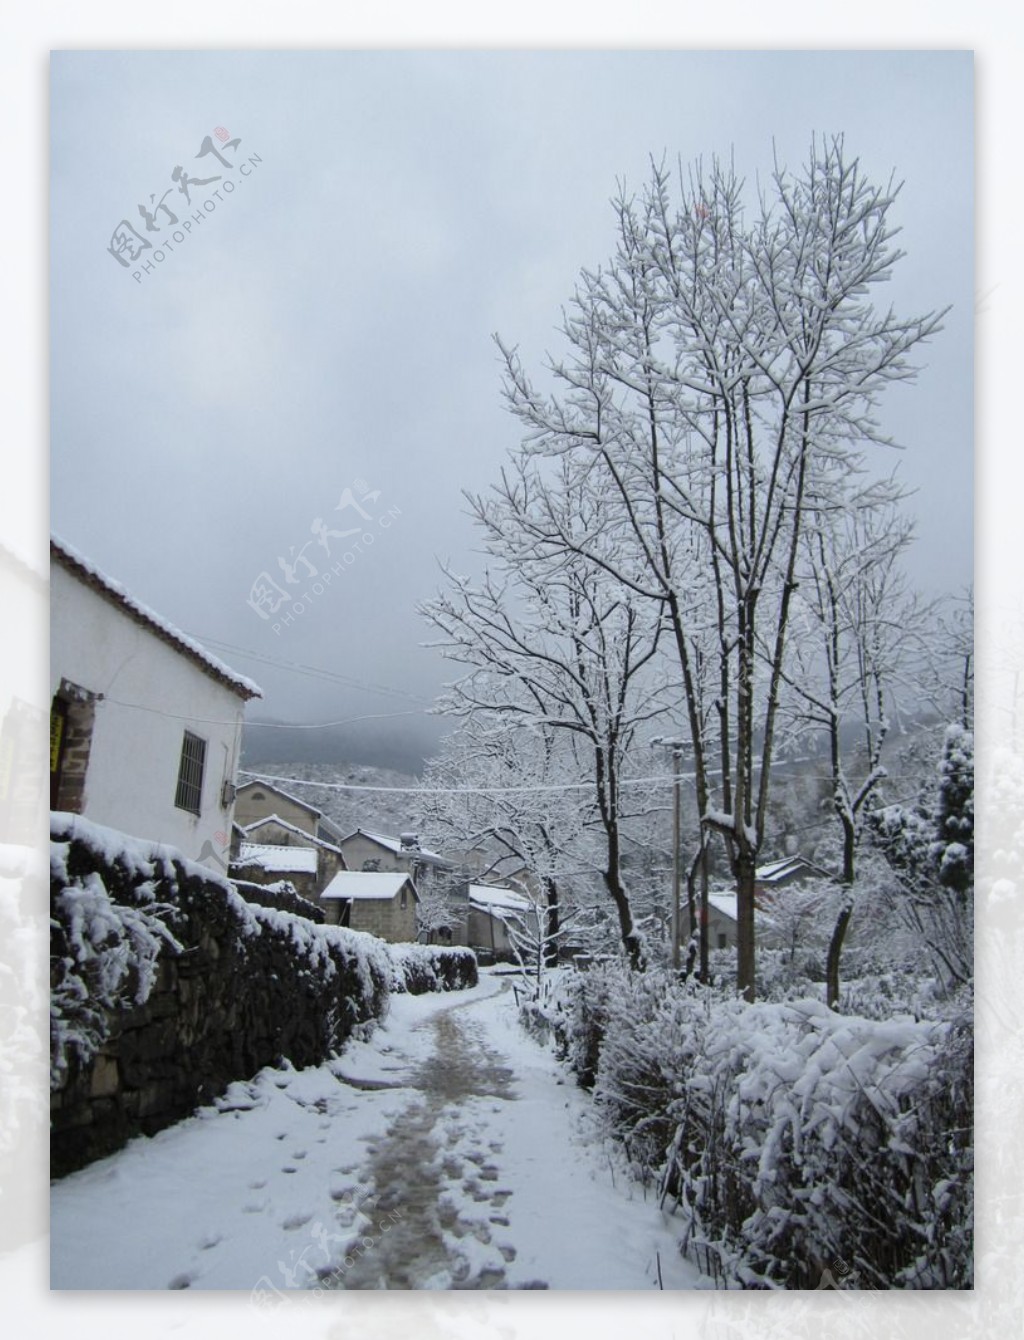 乡村雪景图片